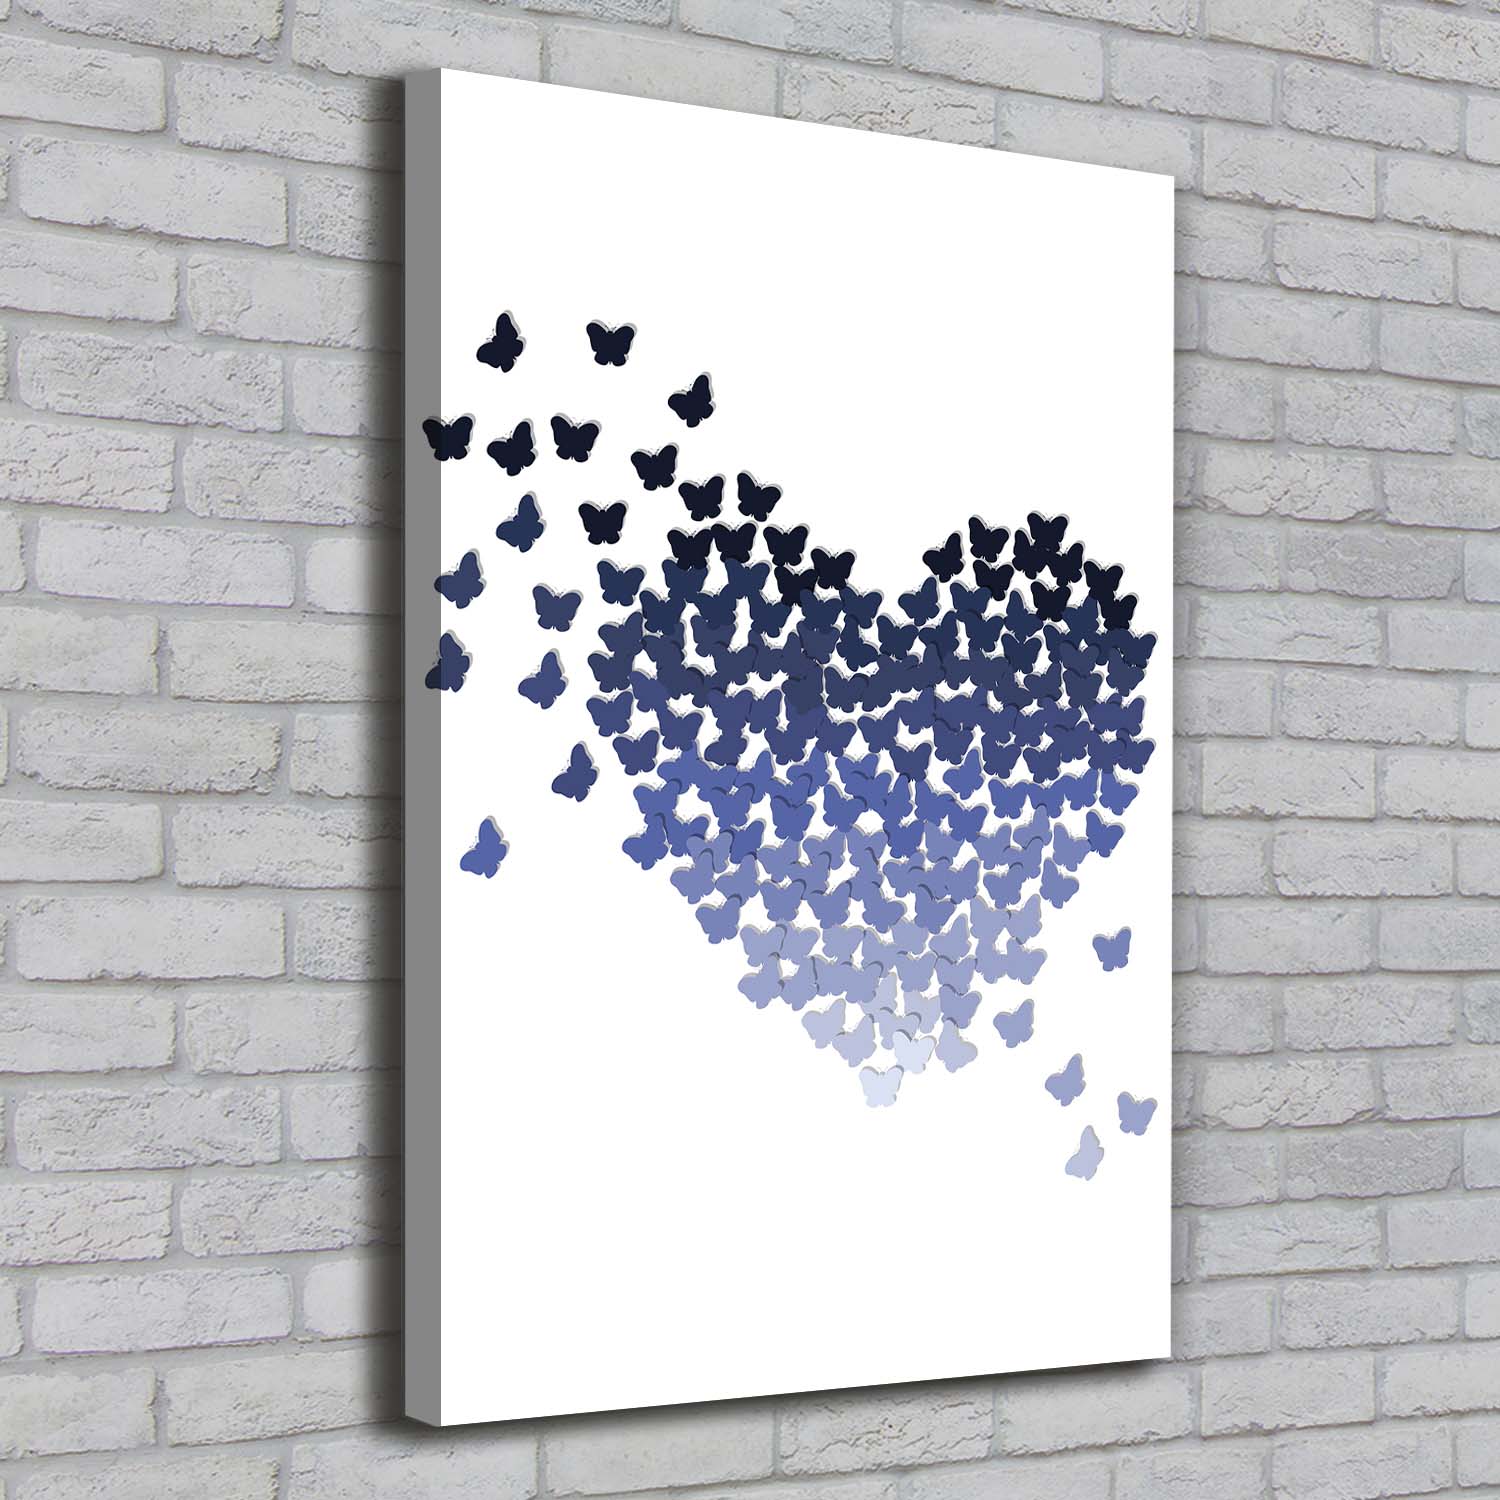 Leinwand-Bild Kunstdruck Hochformat 70x100 Bilder Schmetterlinge Herz